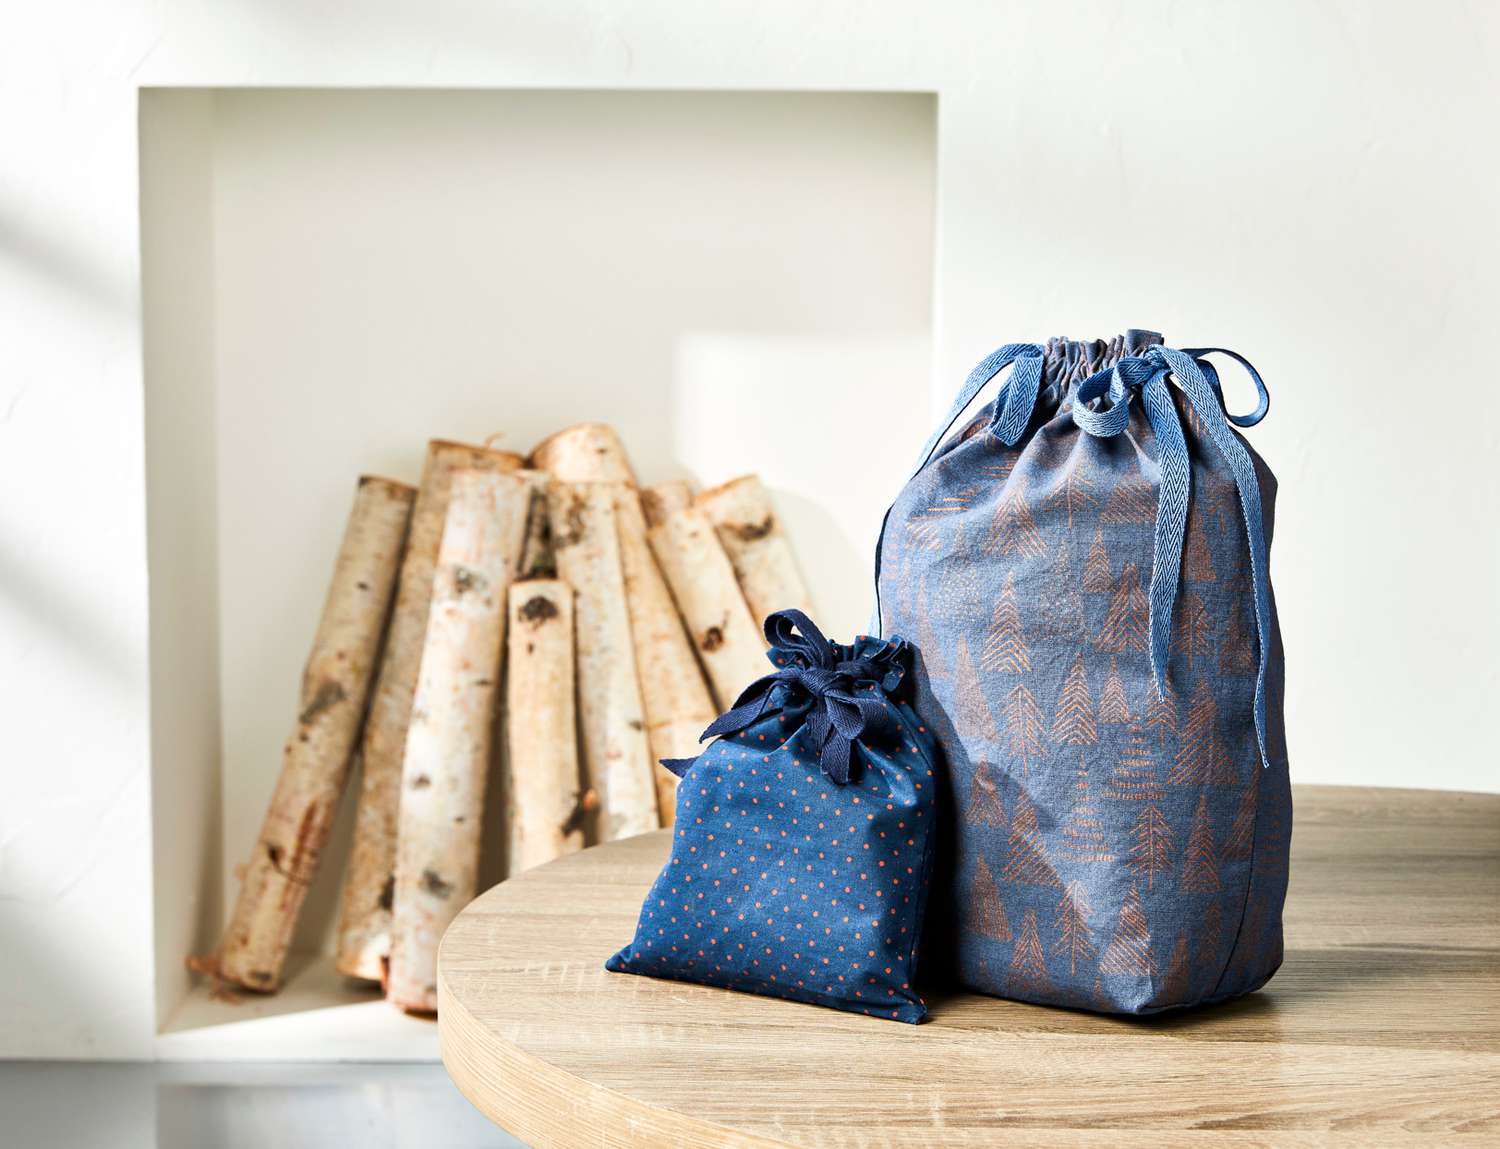 Cotton Fabric reusable gift bag zero waste Eco friendly fabric gift bag Fabric gift bag